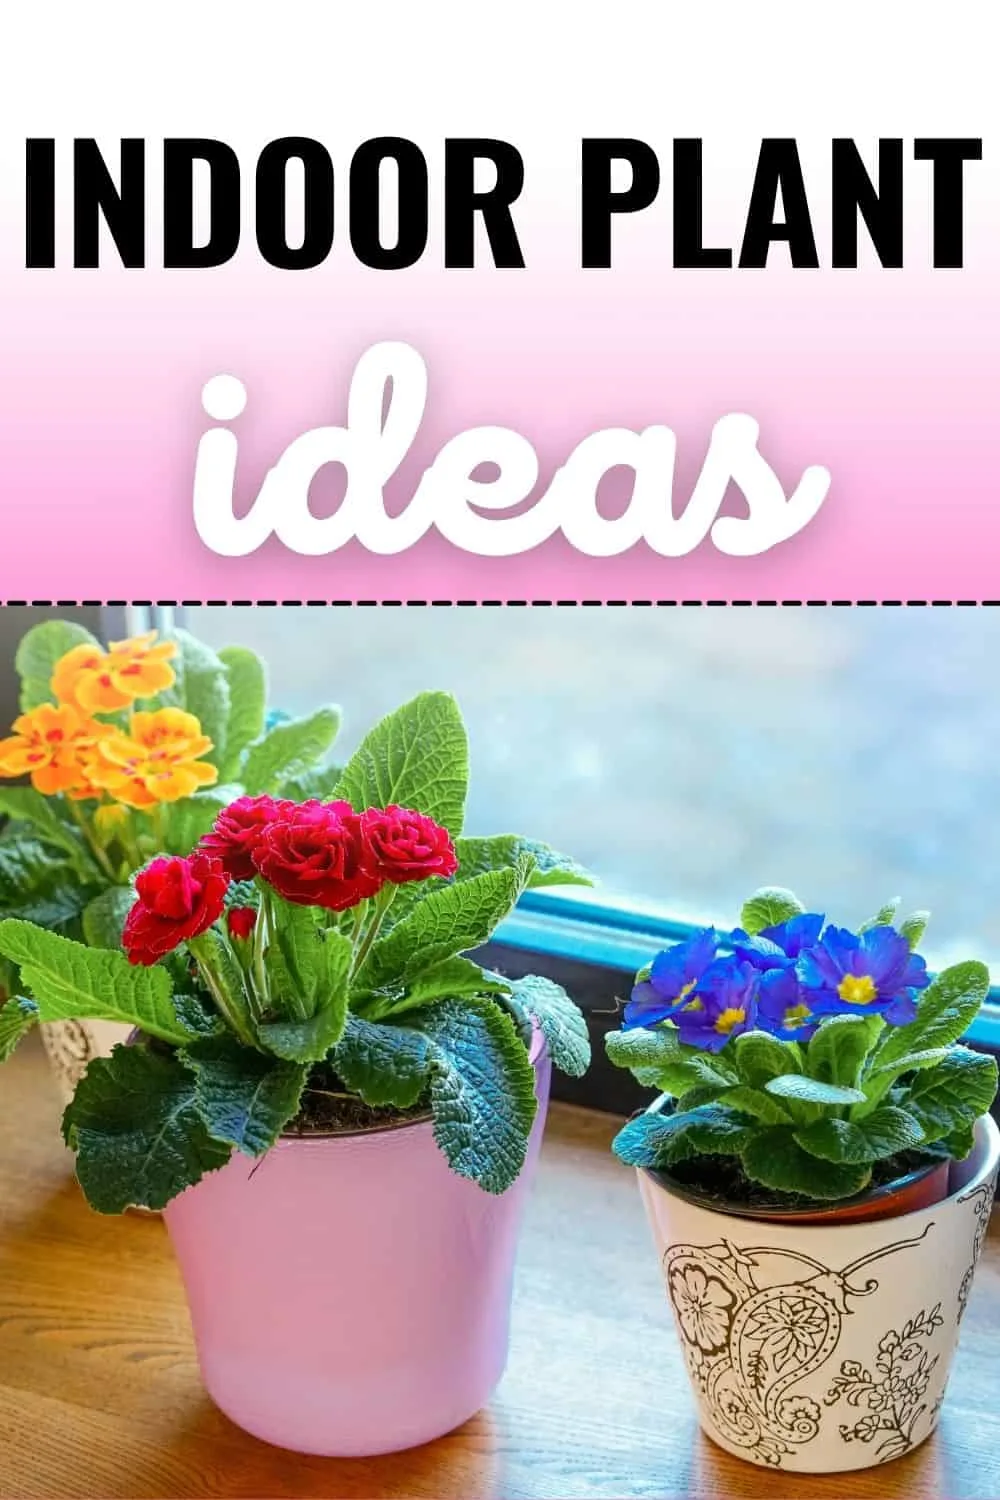 Indoor plant ideas